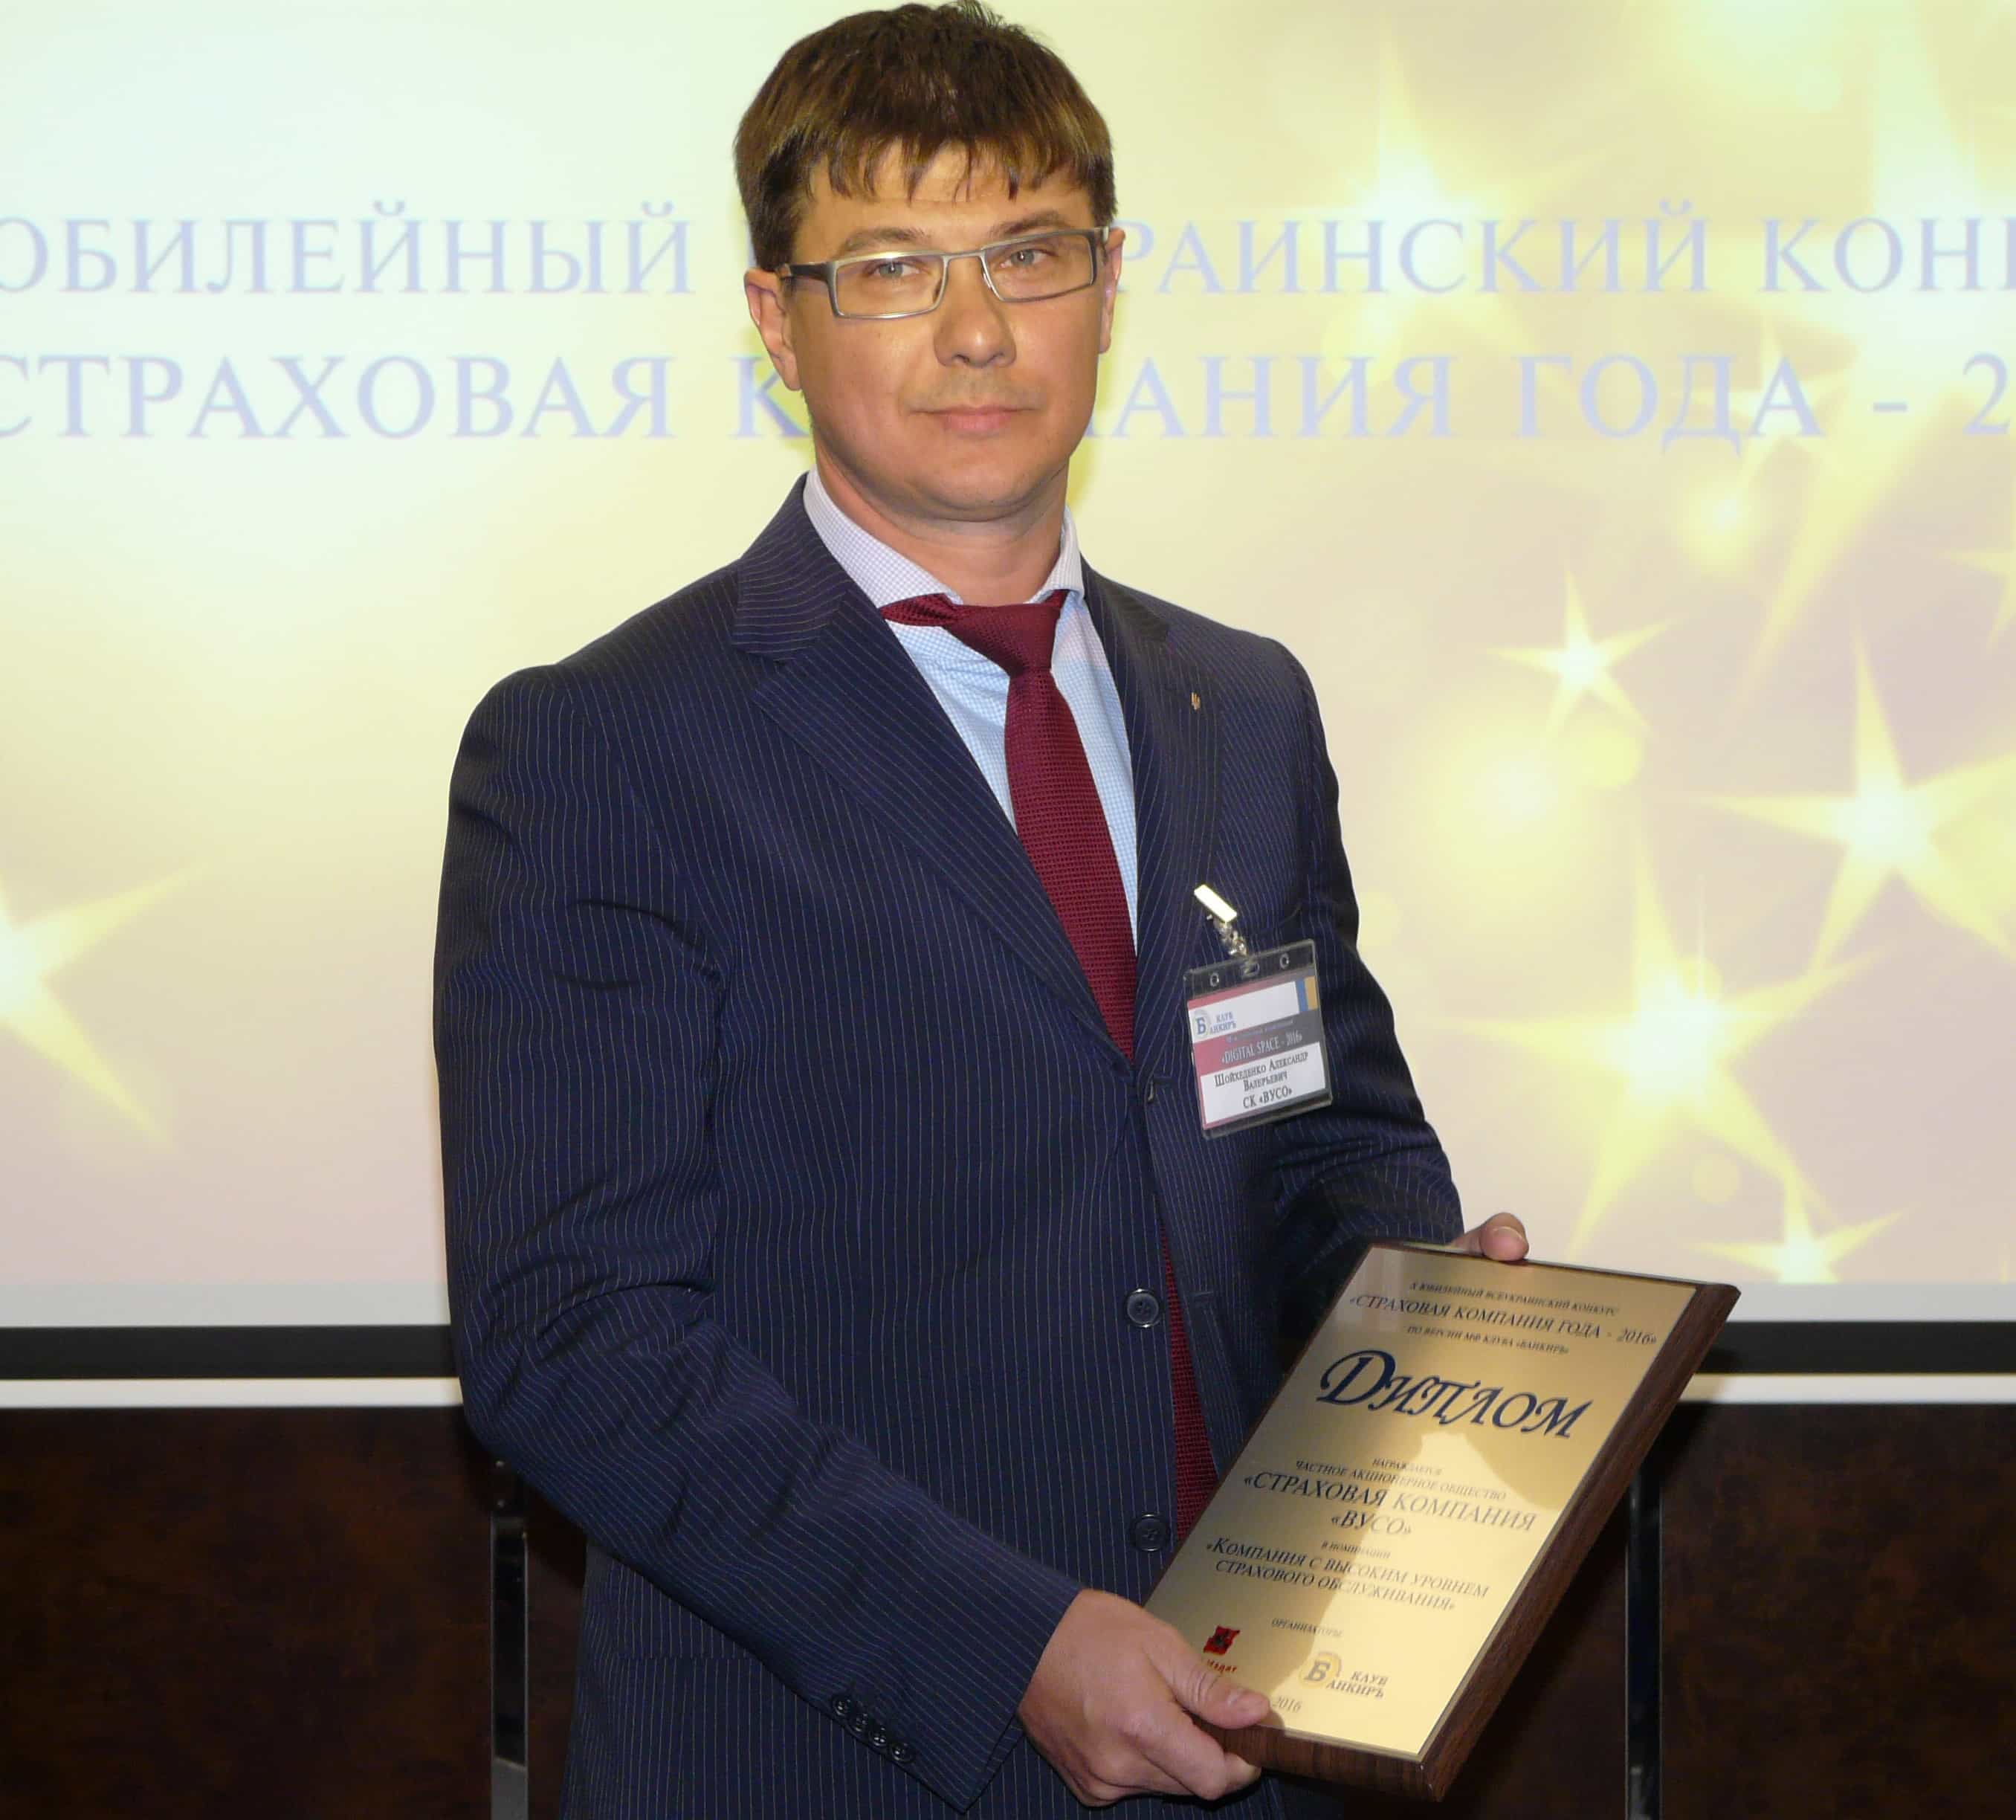 СК «ВУСО» отримала нагороду від клубу «БАНКИРЪ» за кращий сервіс